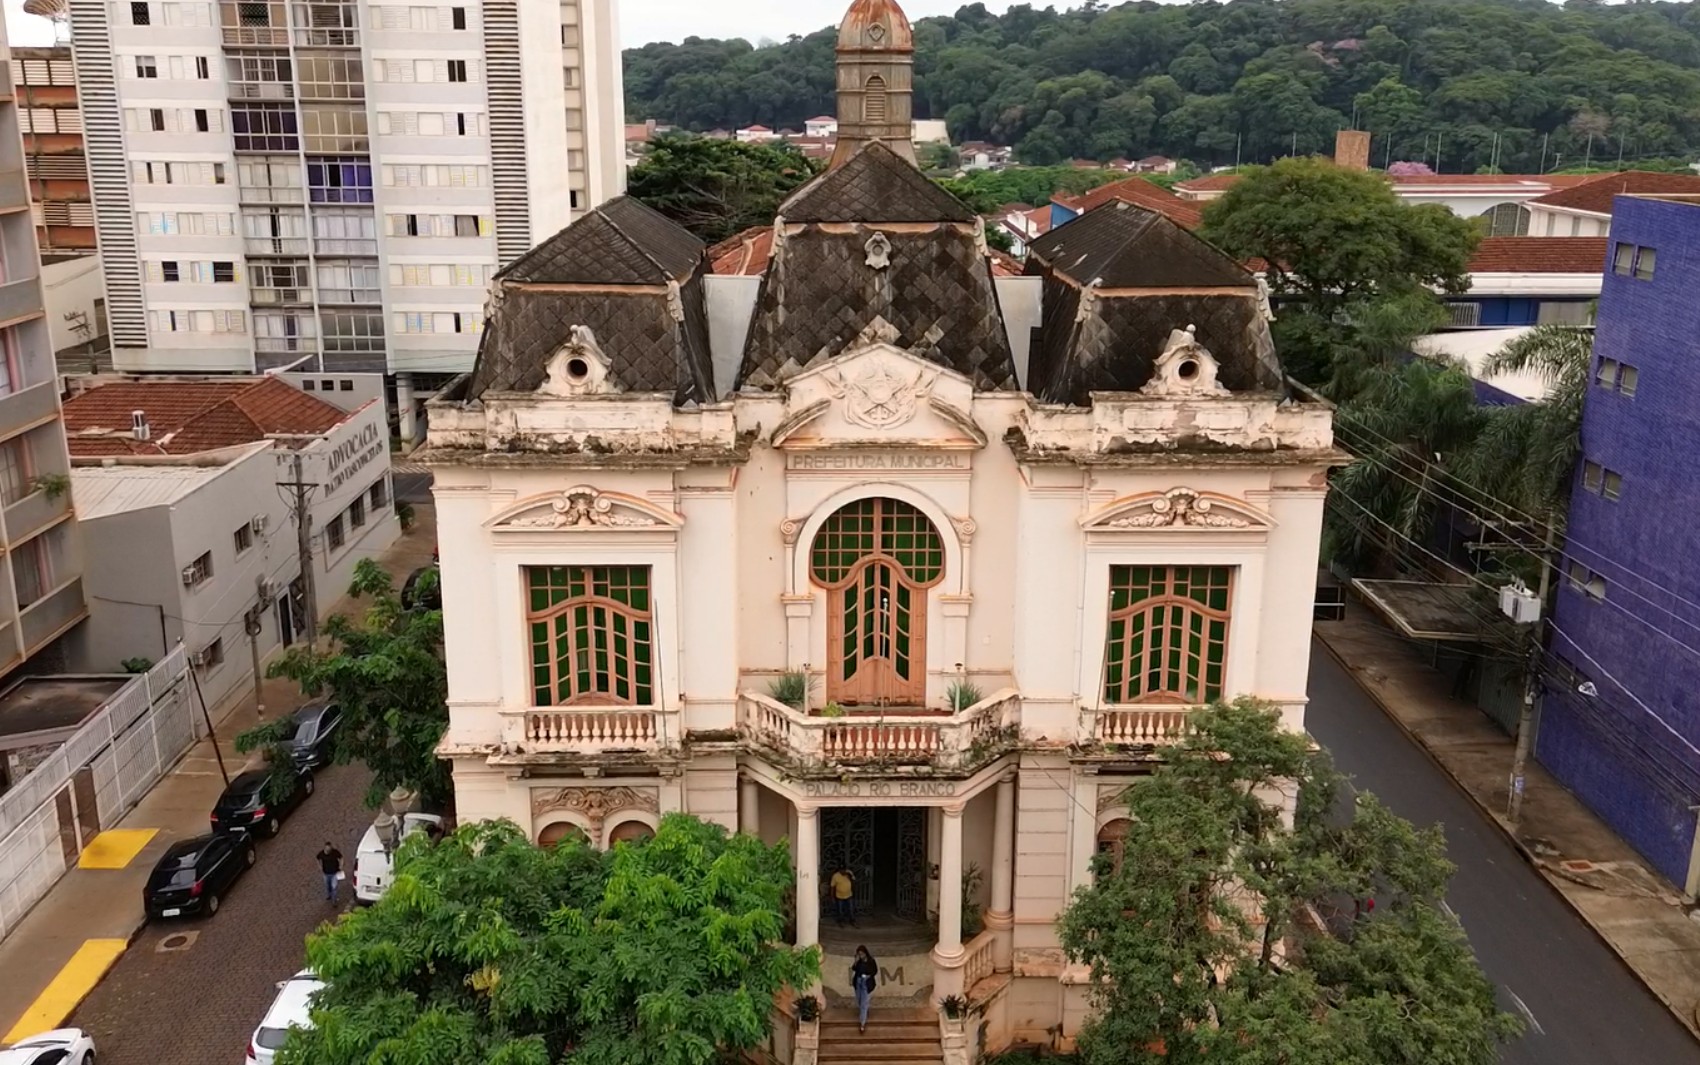 Restauro do Palácio do Rio Branco, em Ribeirão Preto, vai ficar 37% mais caro que valor previsto